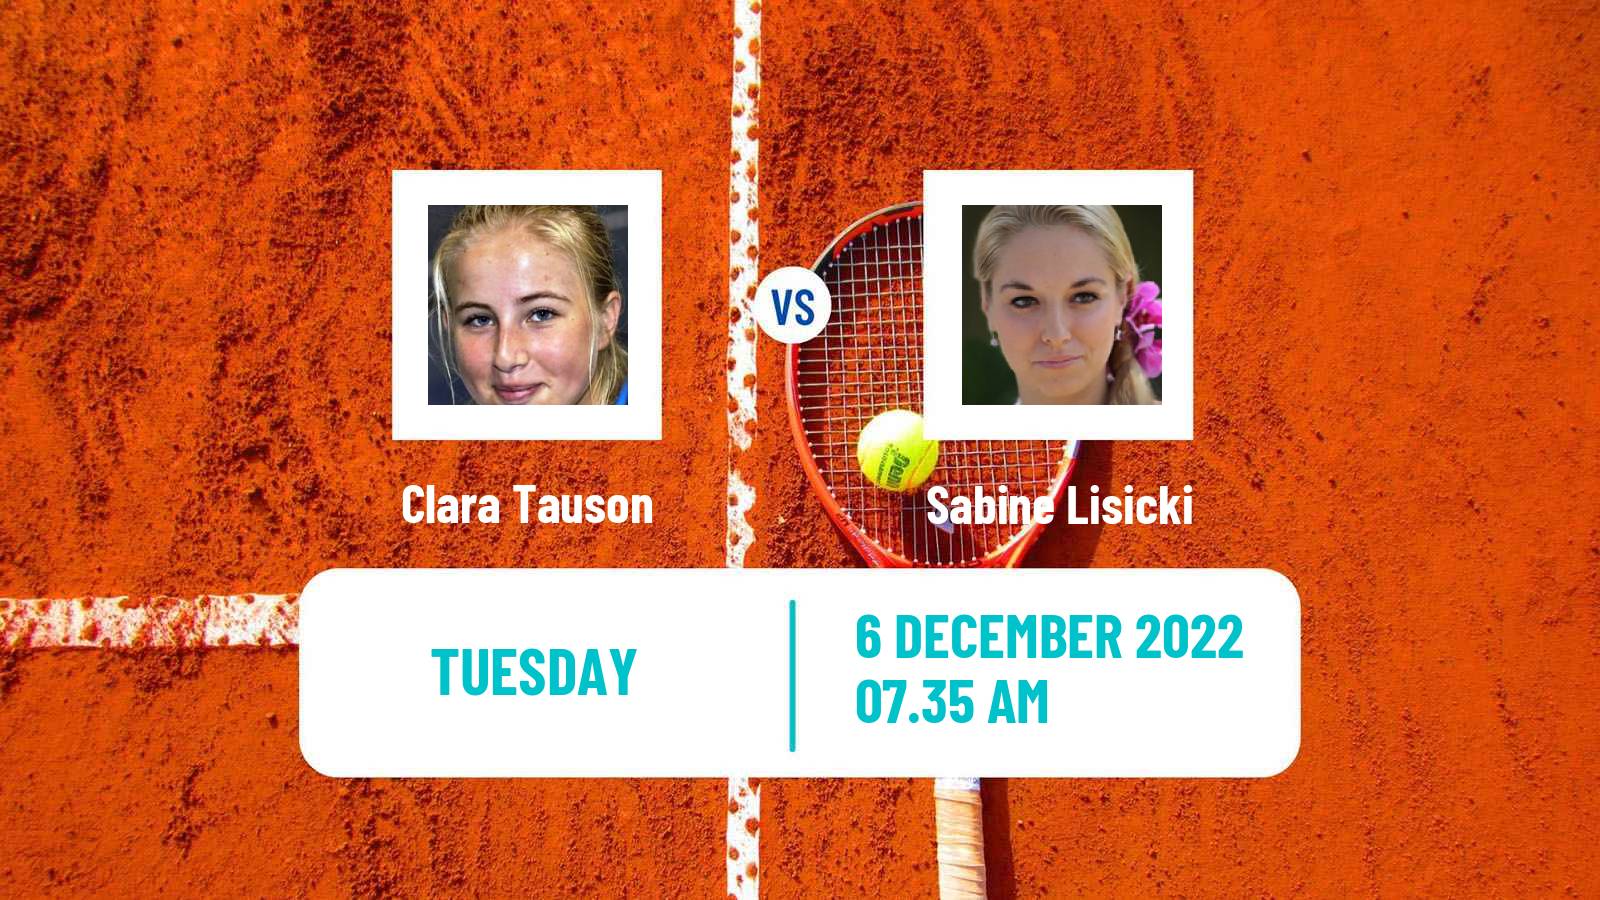 Tennis ATP Challenger Clara Tauson - Sabine Lisicki